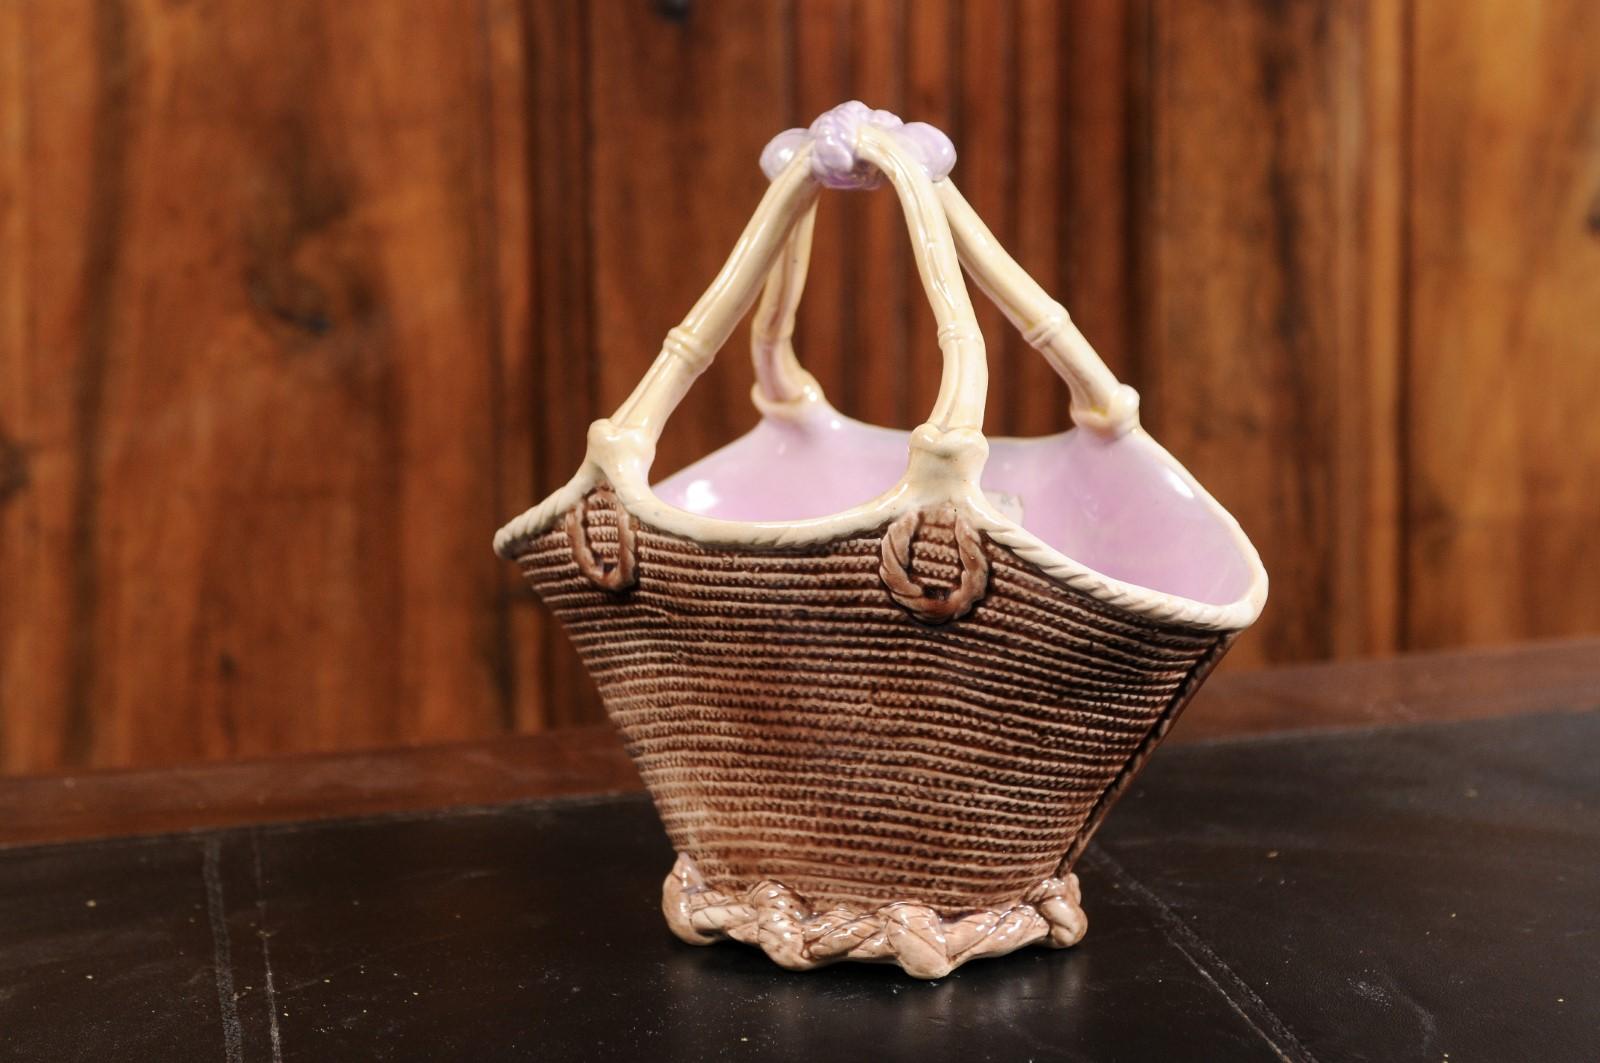 Französischer Majolika-Porzellankorb aus dem 19. Jahrhundert mit Flechtmotiv und rosa Glasur. Dieser Korb aus Majolika-Porzellan, der im 19. Jahrhundert in Frankreich hergestellt wurde, hat einen von Weiden inspirierten Korpus mit bambusartigen